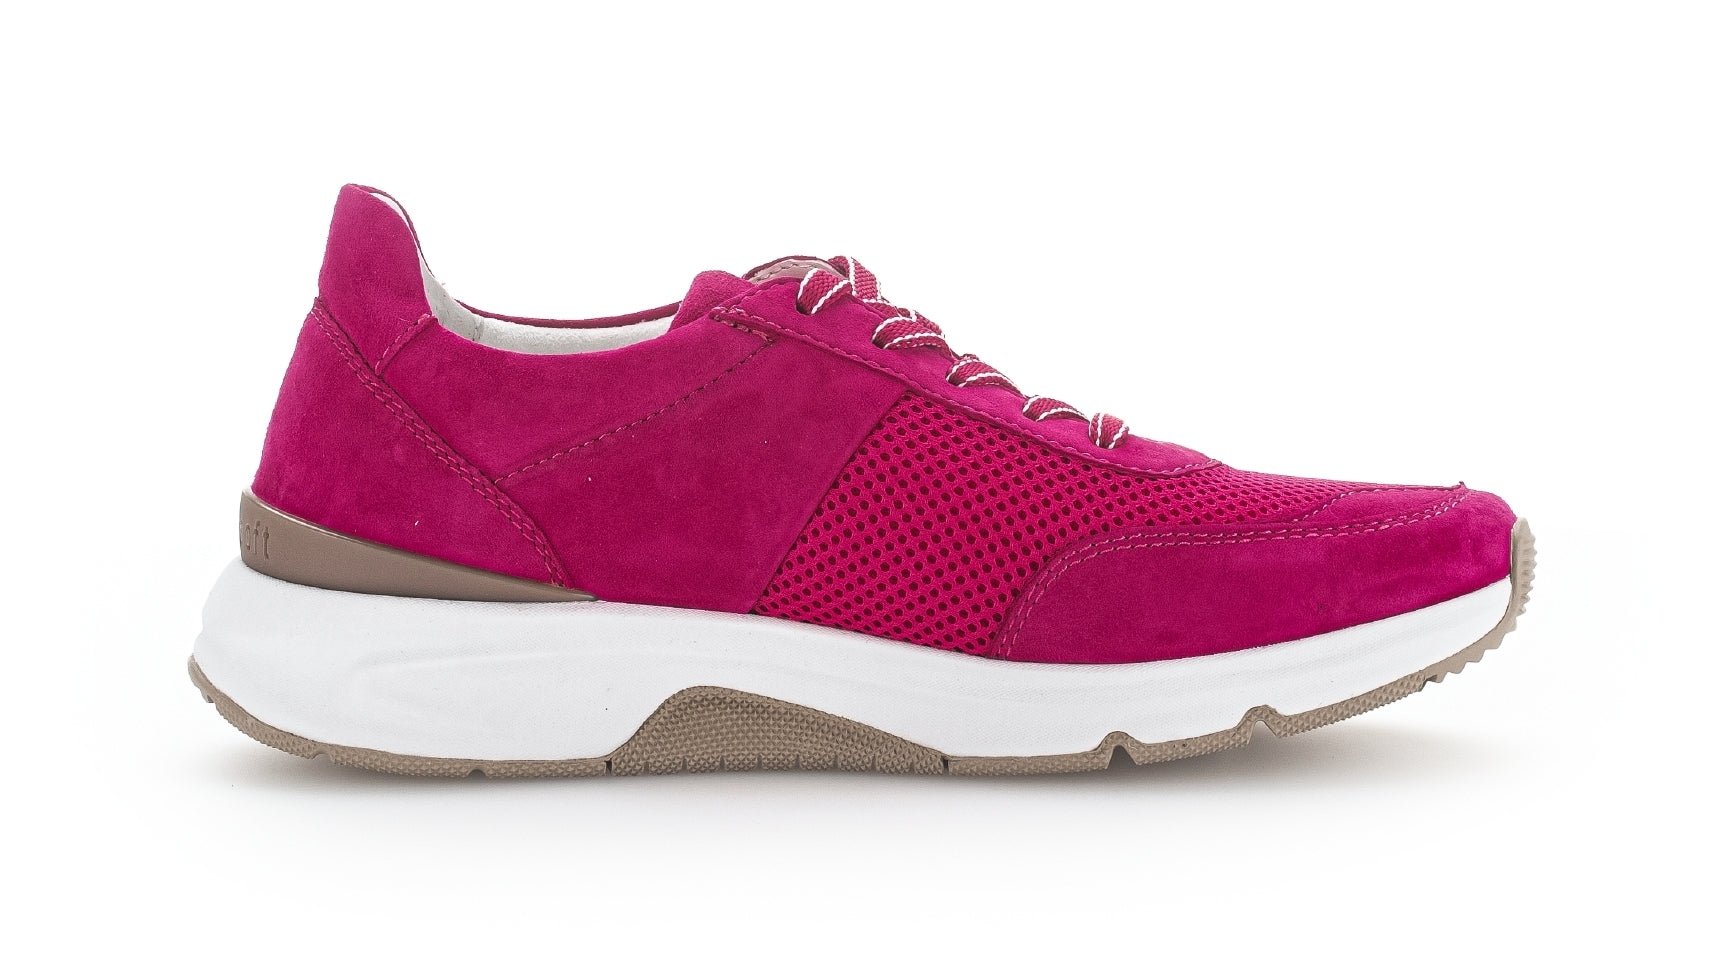 '46.897.28' women's walking sneaker - pink - Chaplinshoes'46.897.28' women's walking sneaker - pinkGabor